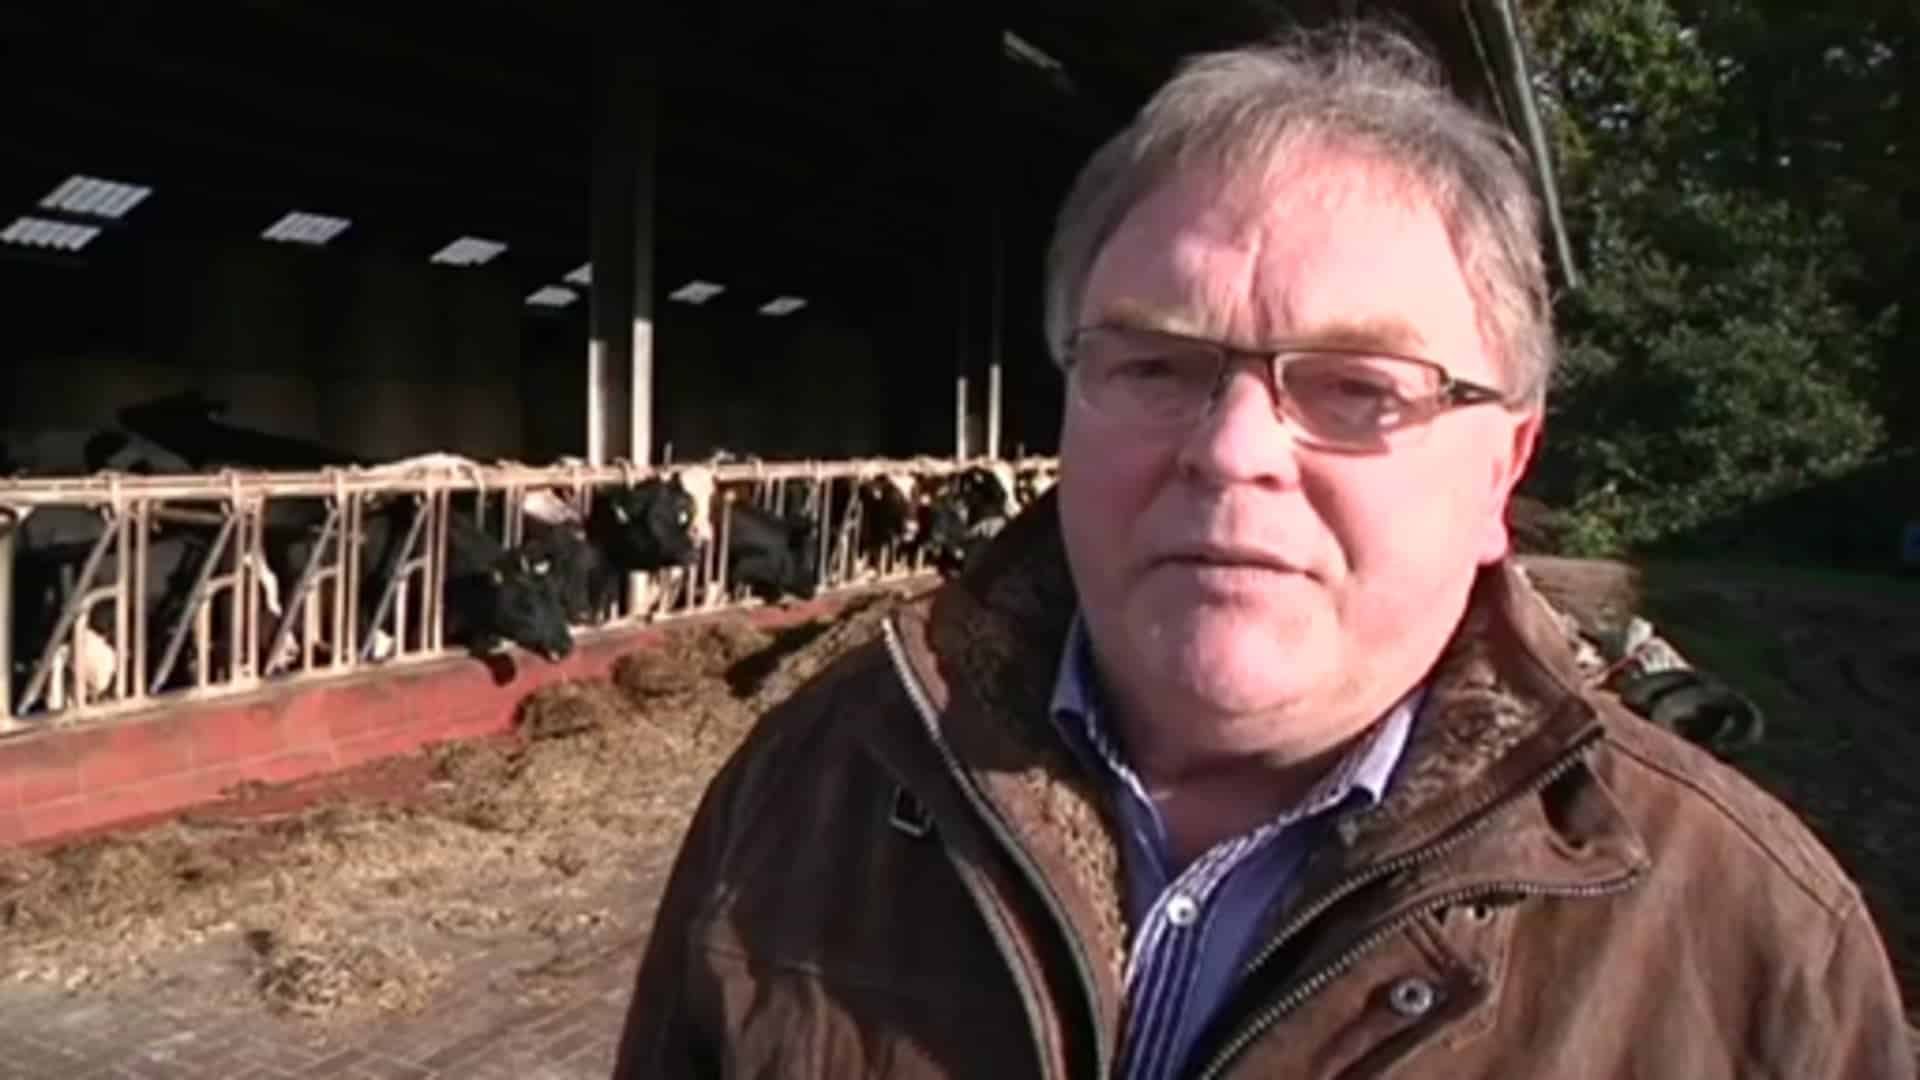 Landvolk äußert sich zum Gammelfleischskandal